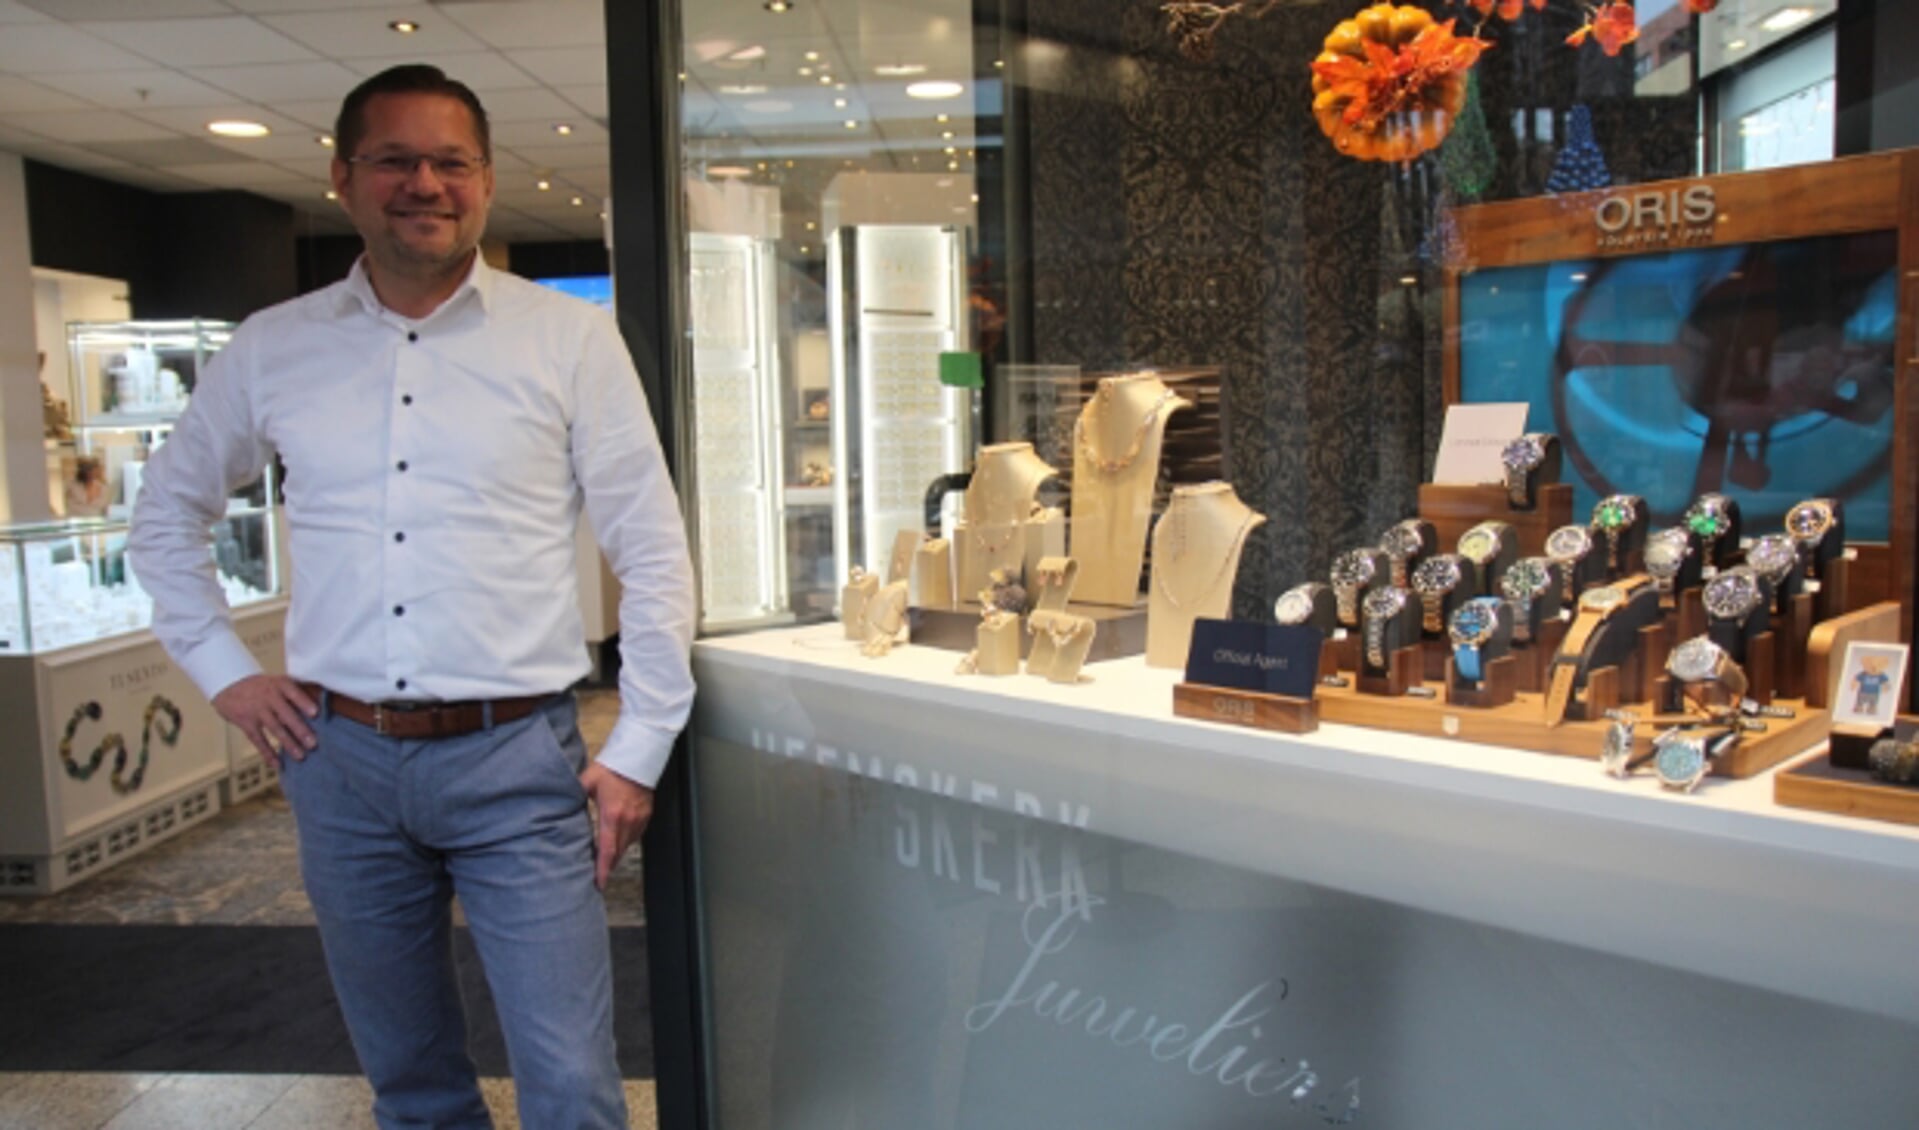 Ruud Heemskerk richt zich op de regio. “Kom eens een kijkje nemen in het winkelcentrum van Pijnacker”, zegt hij ook tegen de lezers van Hart van Lansingerland.